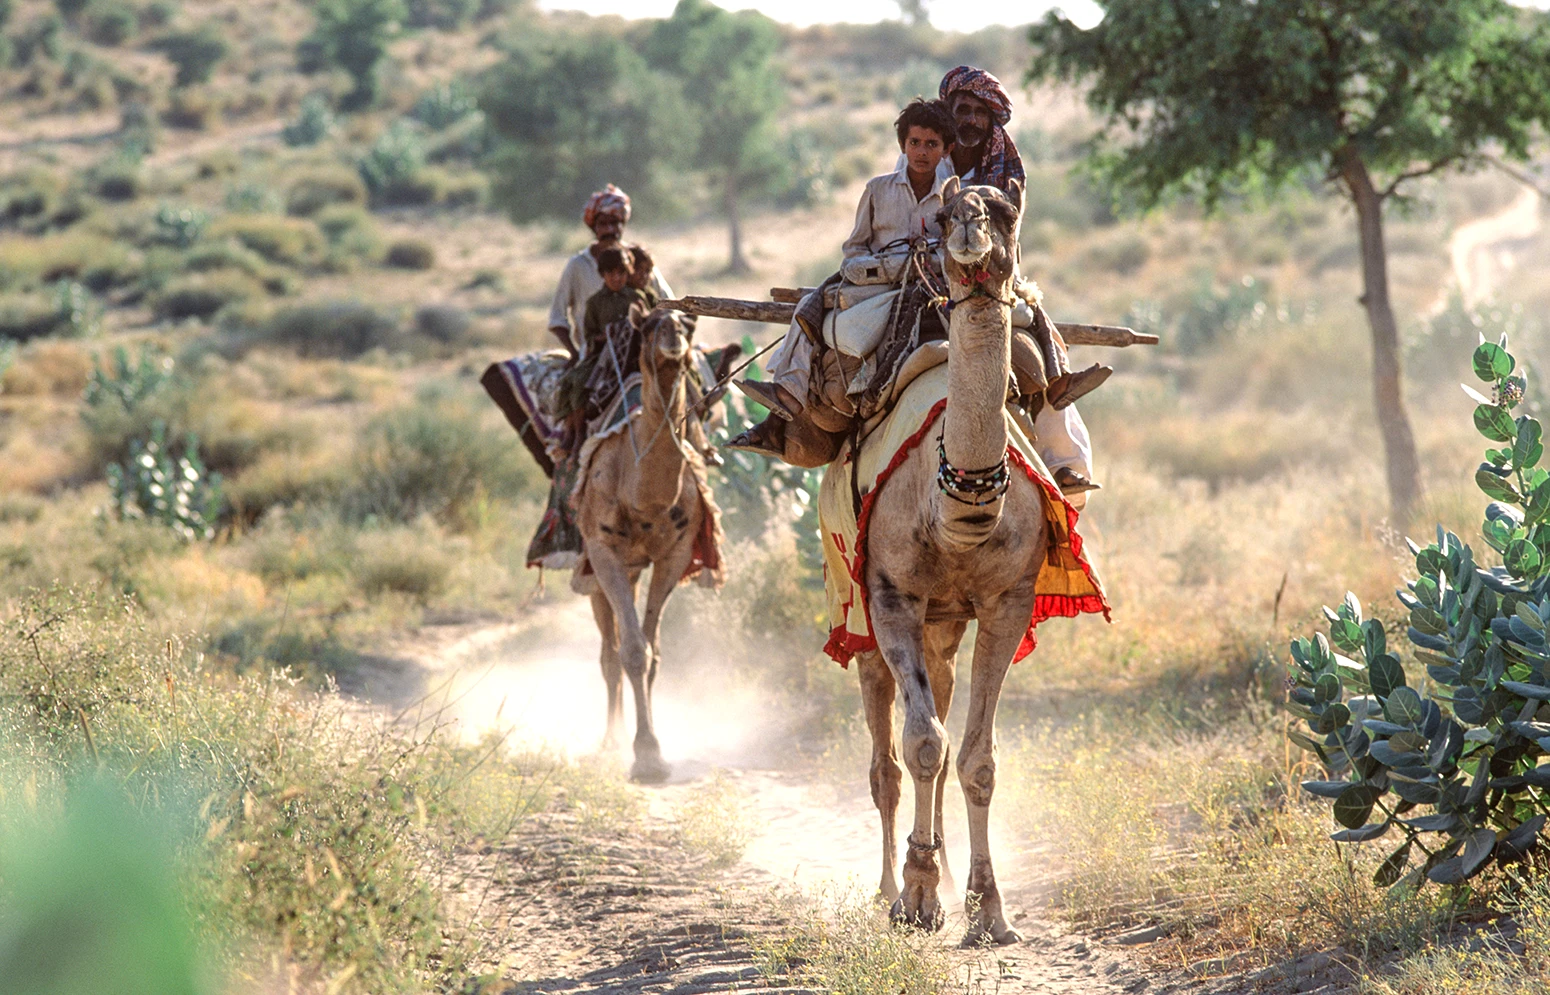 Θάρι νομάδες με καμήλα. Έρημος Thar, Πακιστάν.